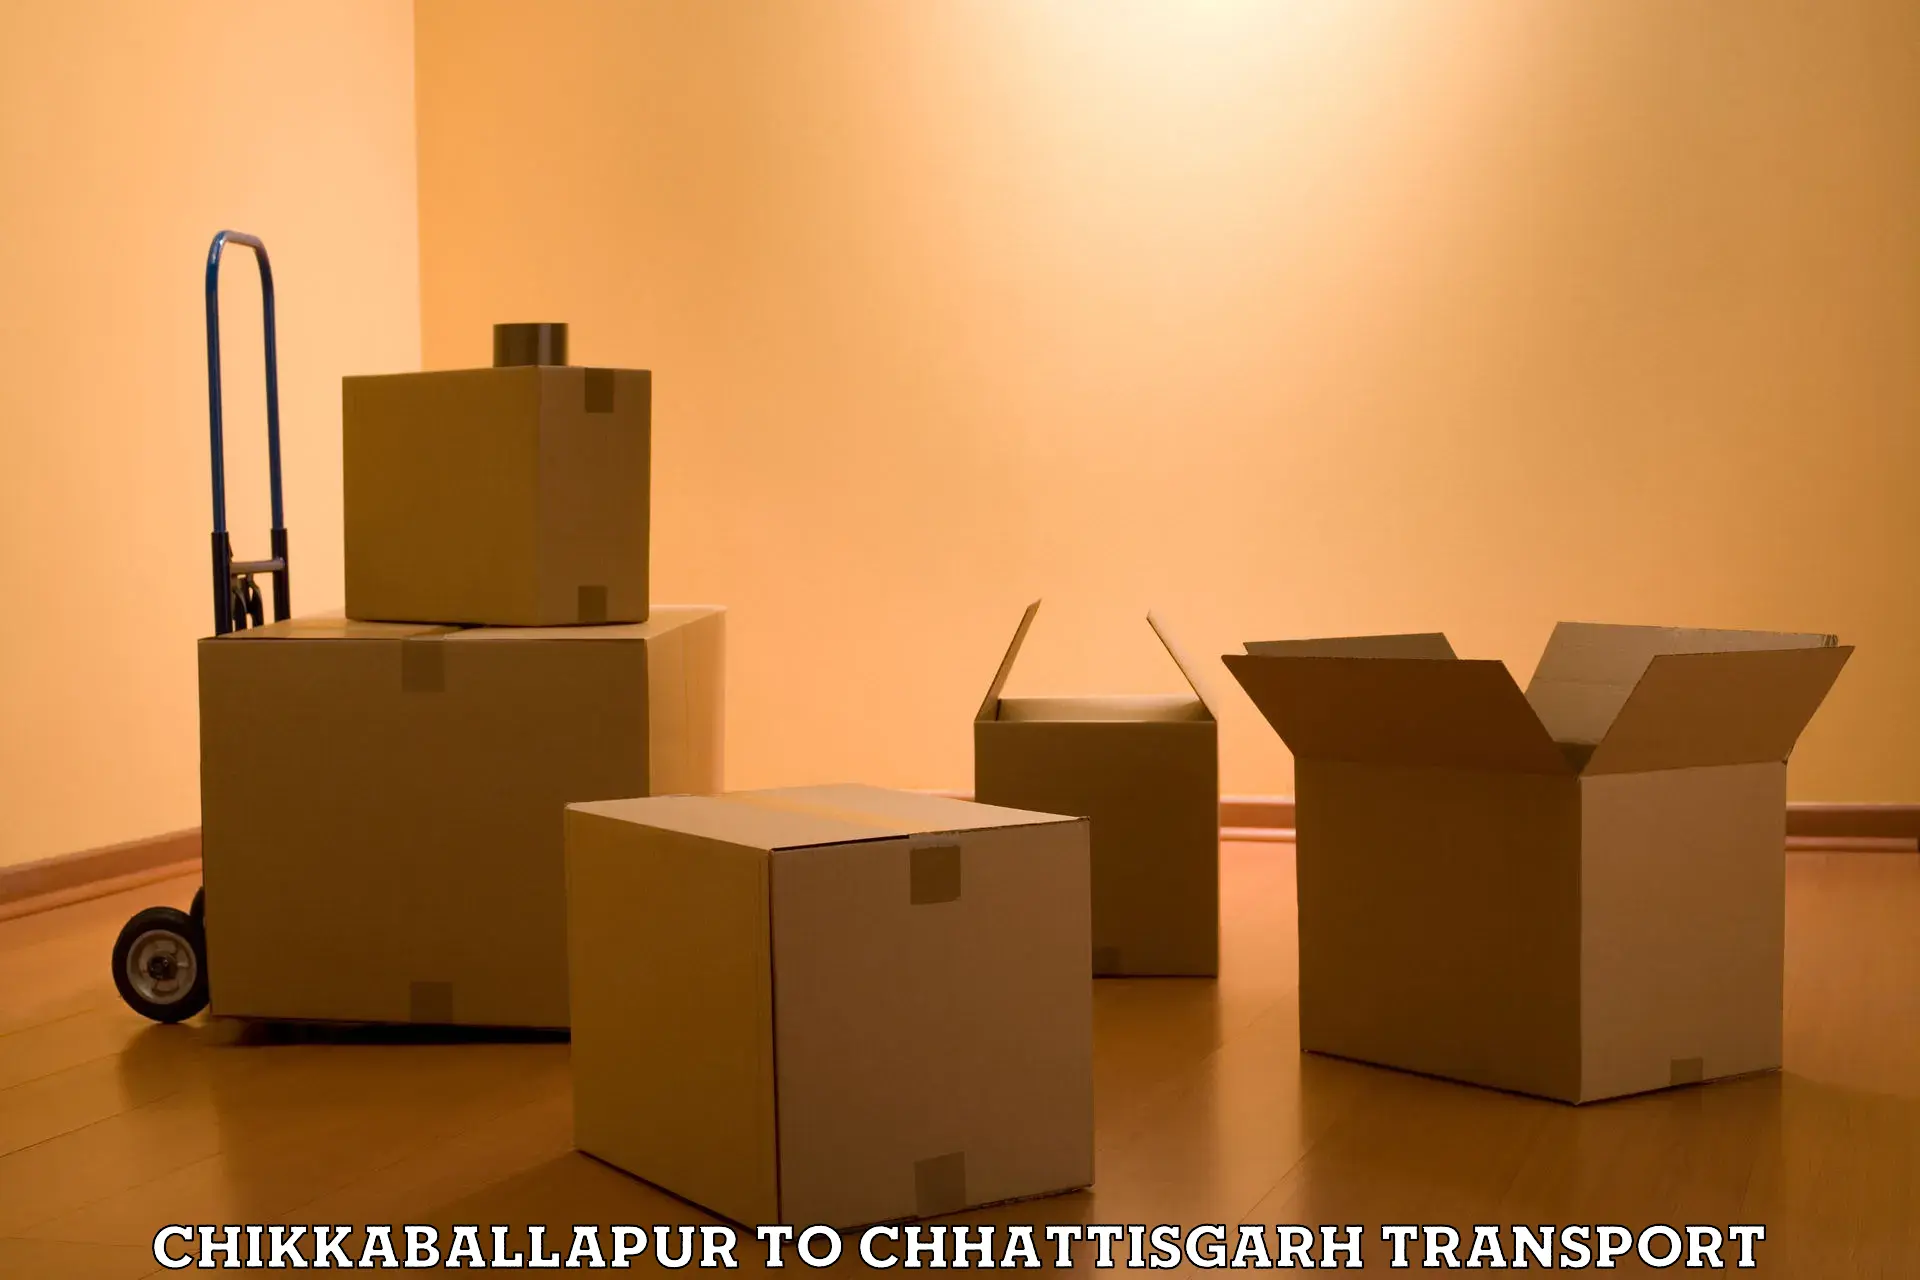 Transport in sharing Chikkaballapur to Raigarh Chhattisgarh